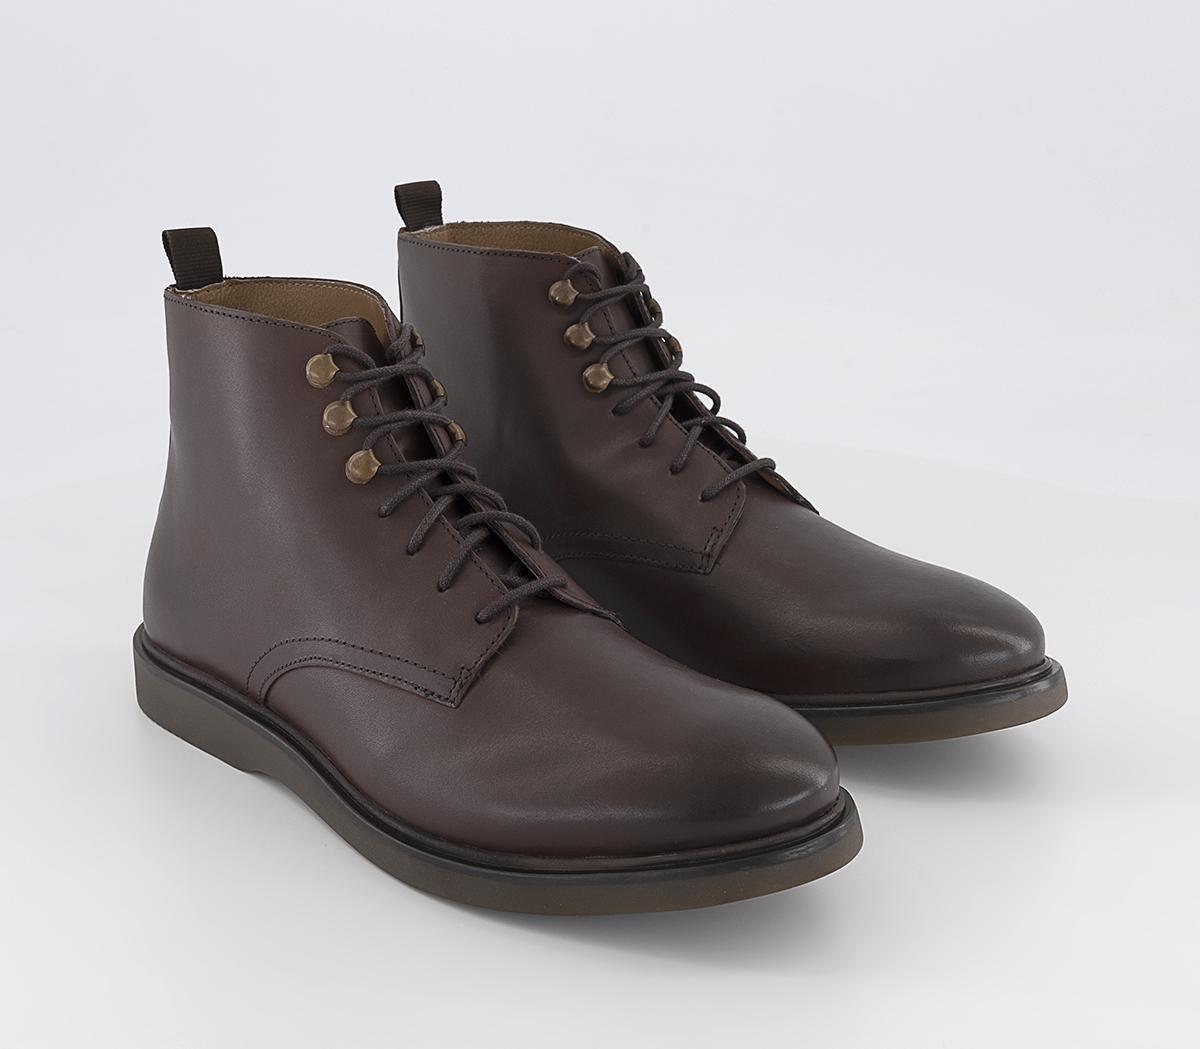 Hudson London Battle Boots Brown - Men’s Boots